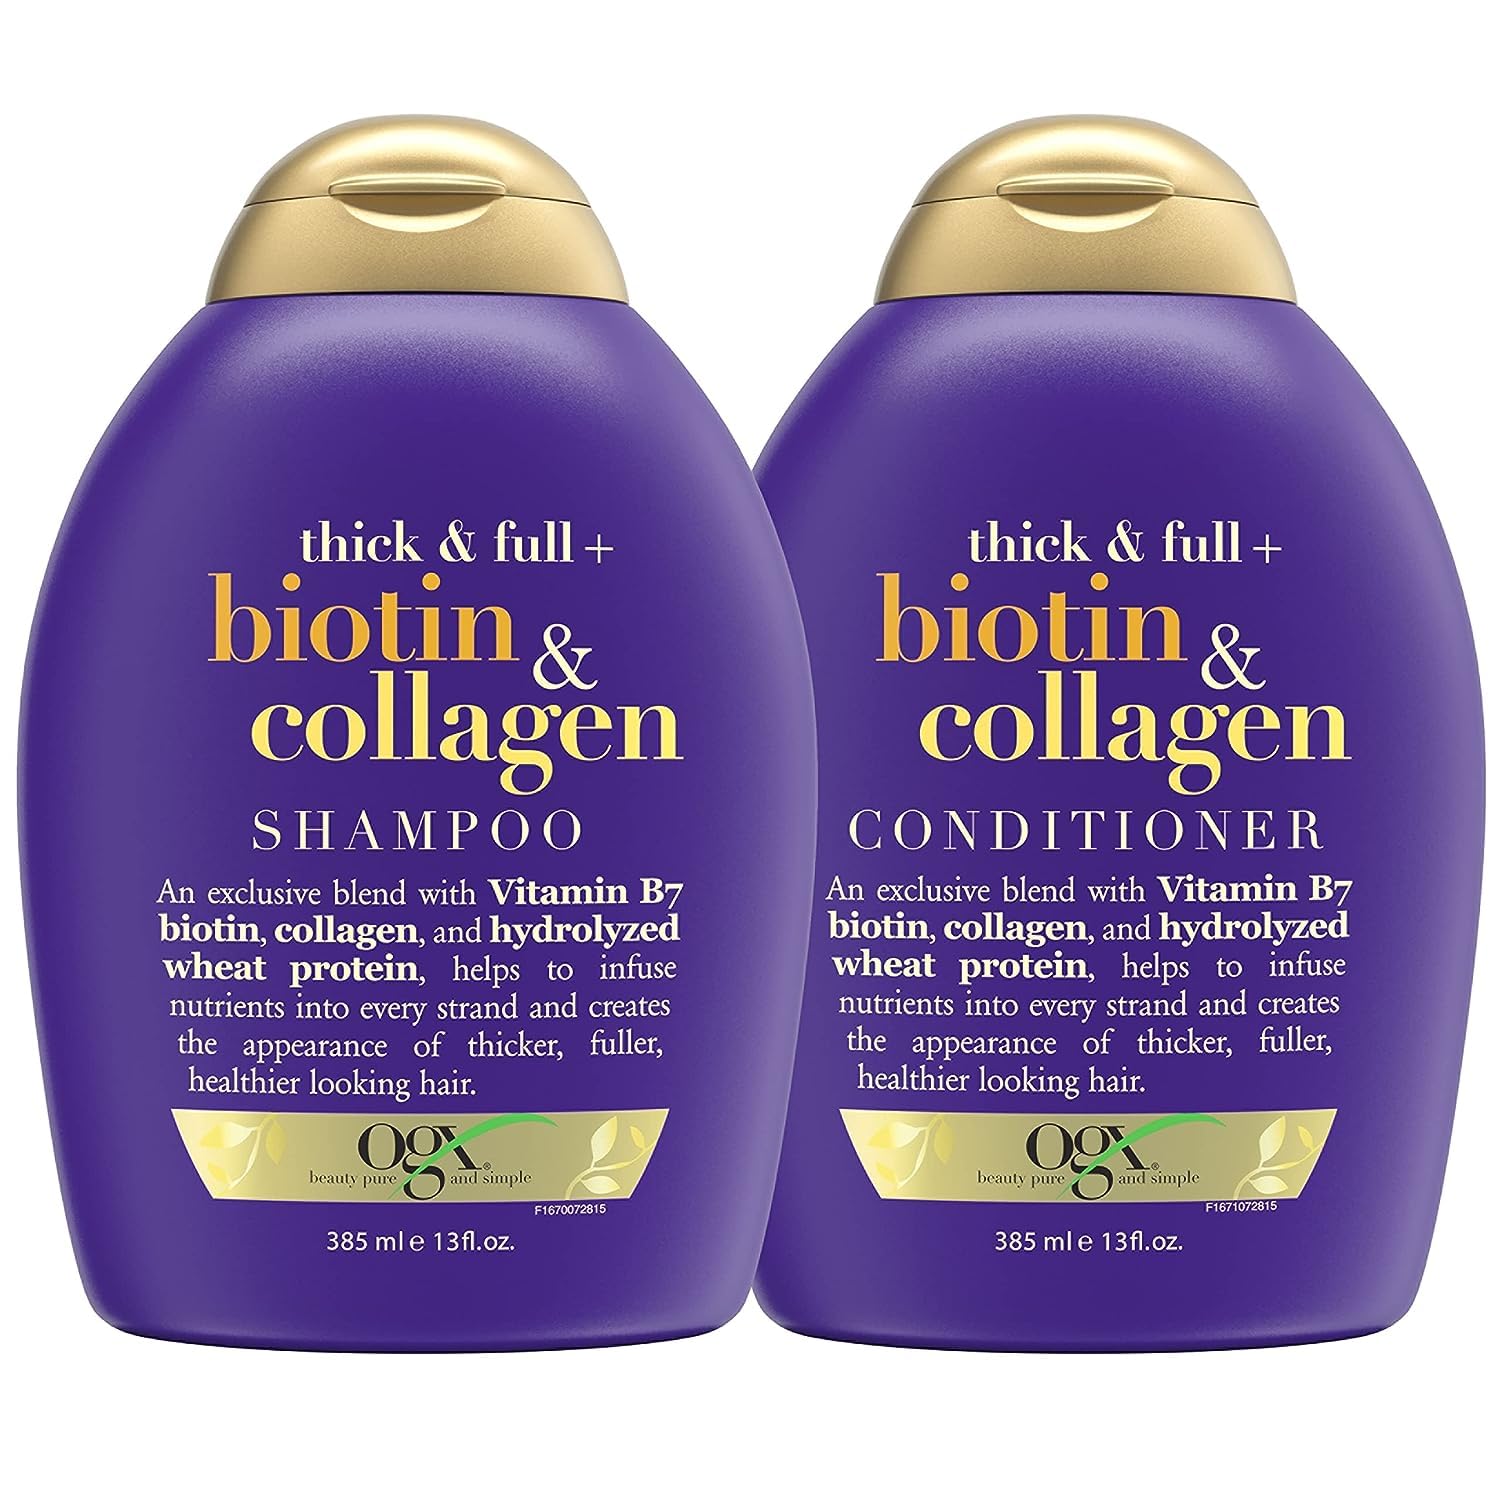 ogx szampon biotin & collagen opinie